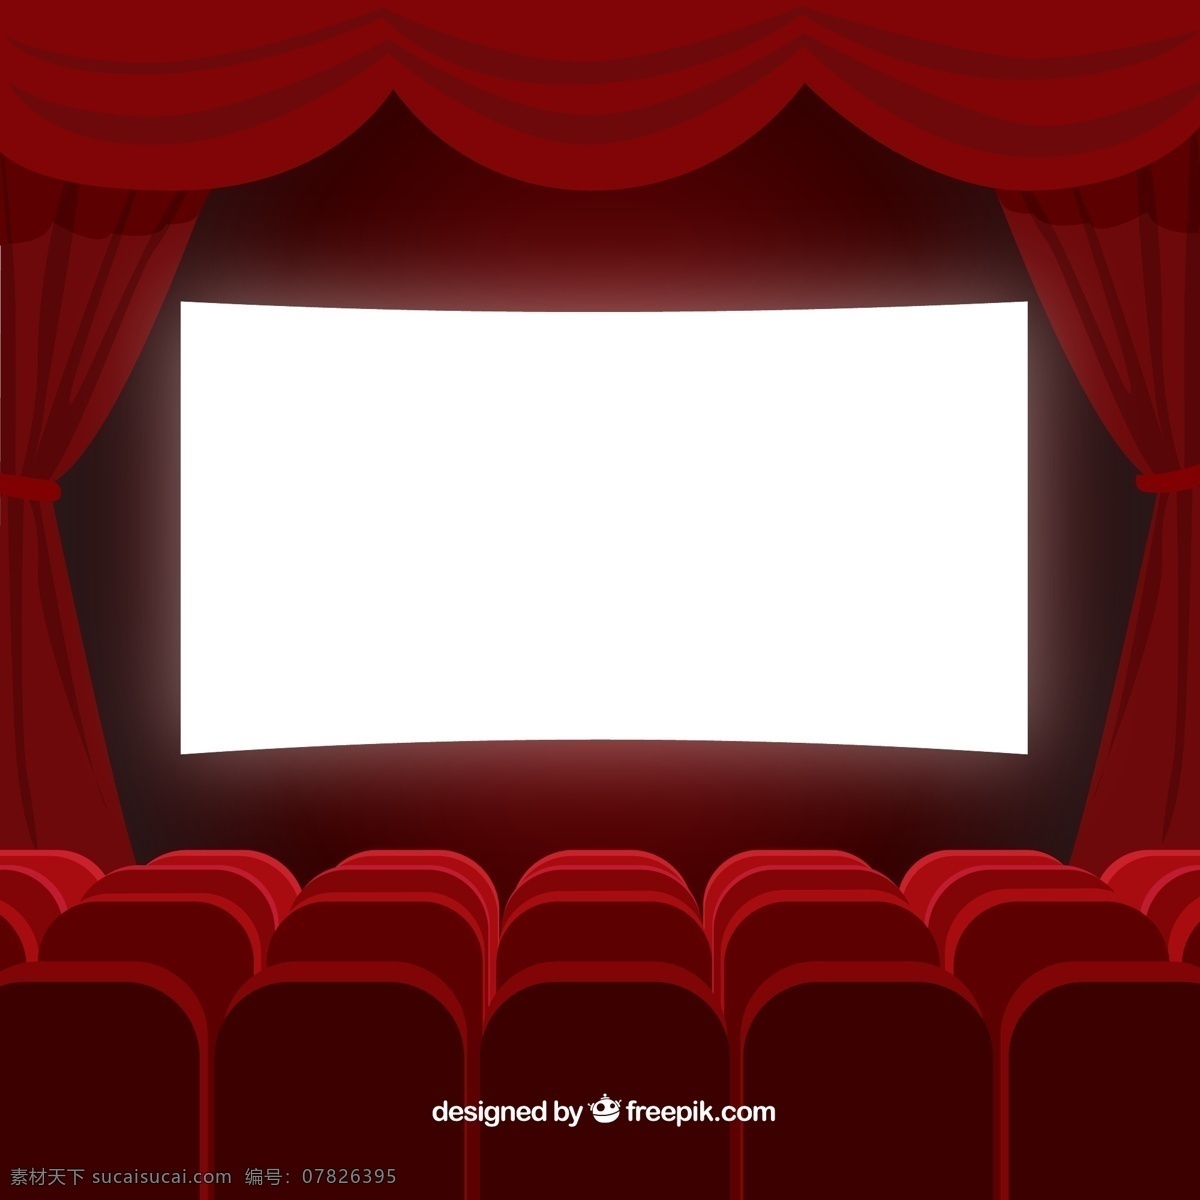 红色 电影院 放映厅 矢量 矢量图 观众席 帷幔 电影 电影幕布 ai格式